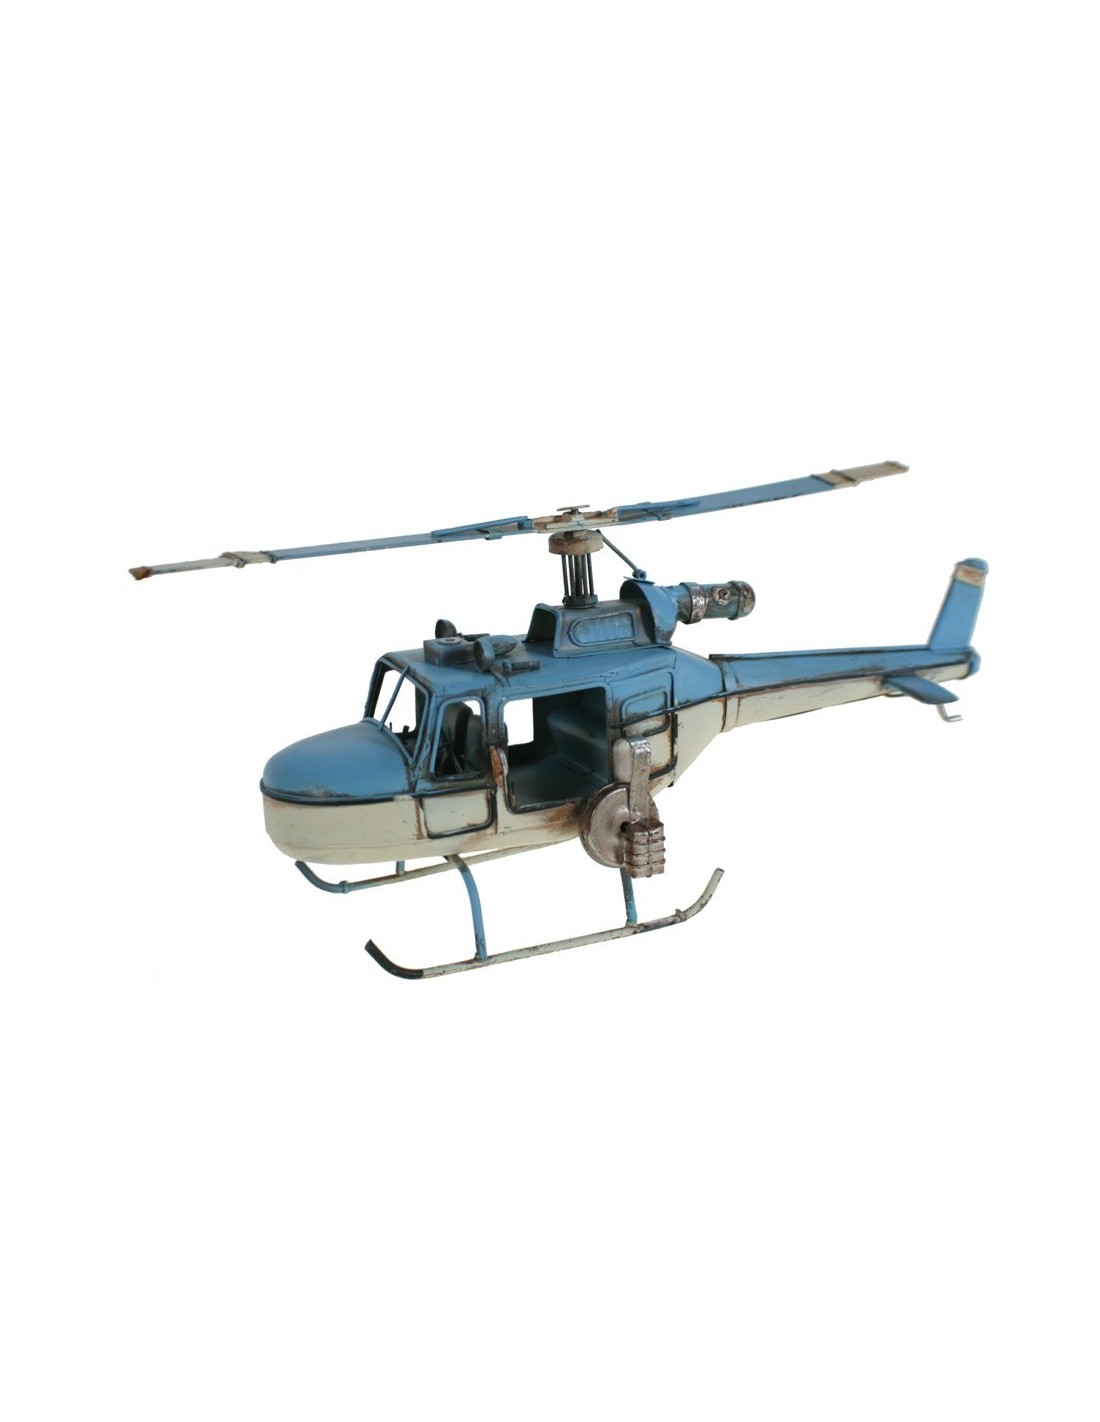 Replica de helicóptero de combate en color azul y blanco